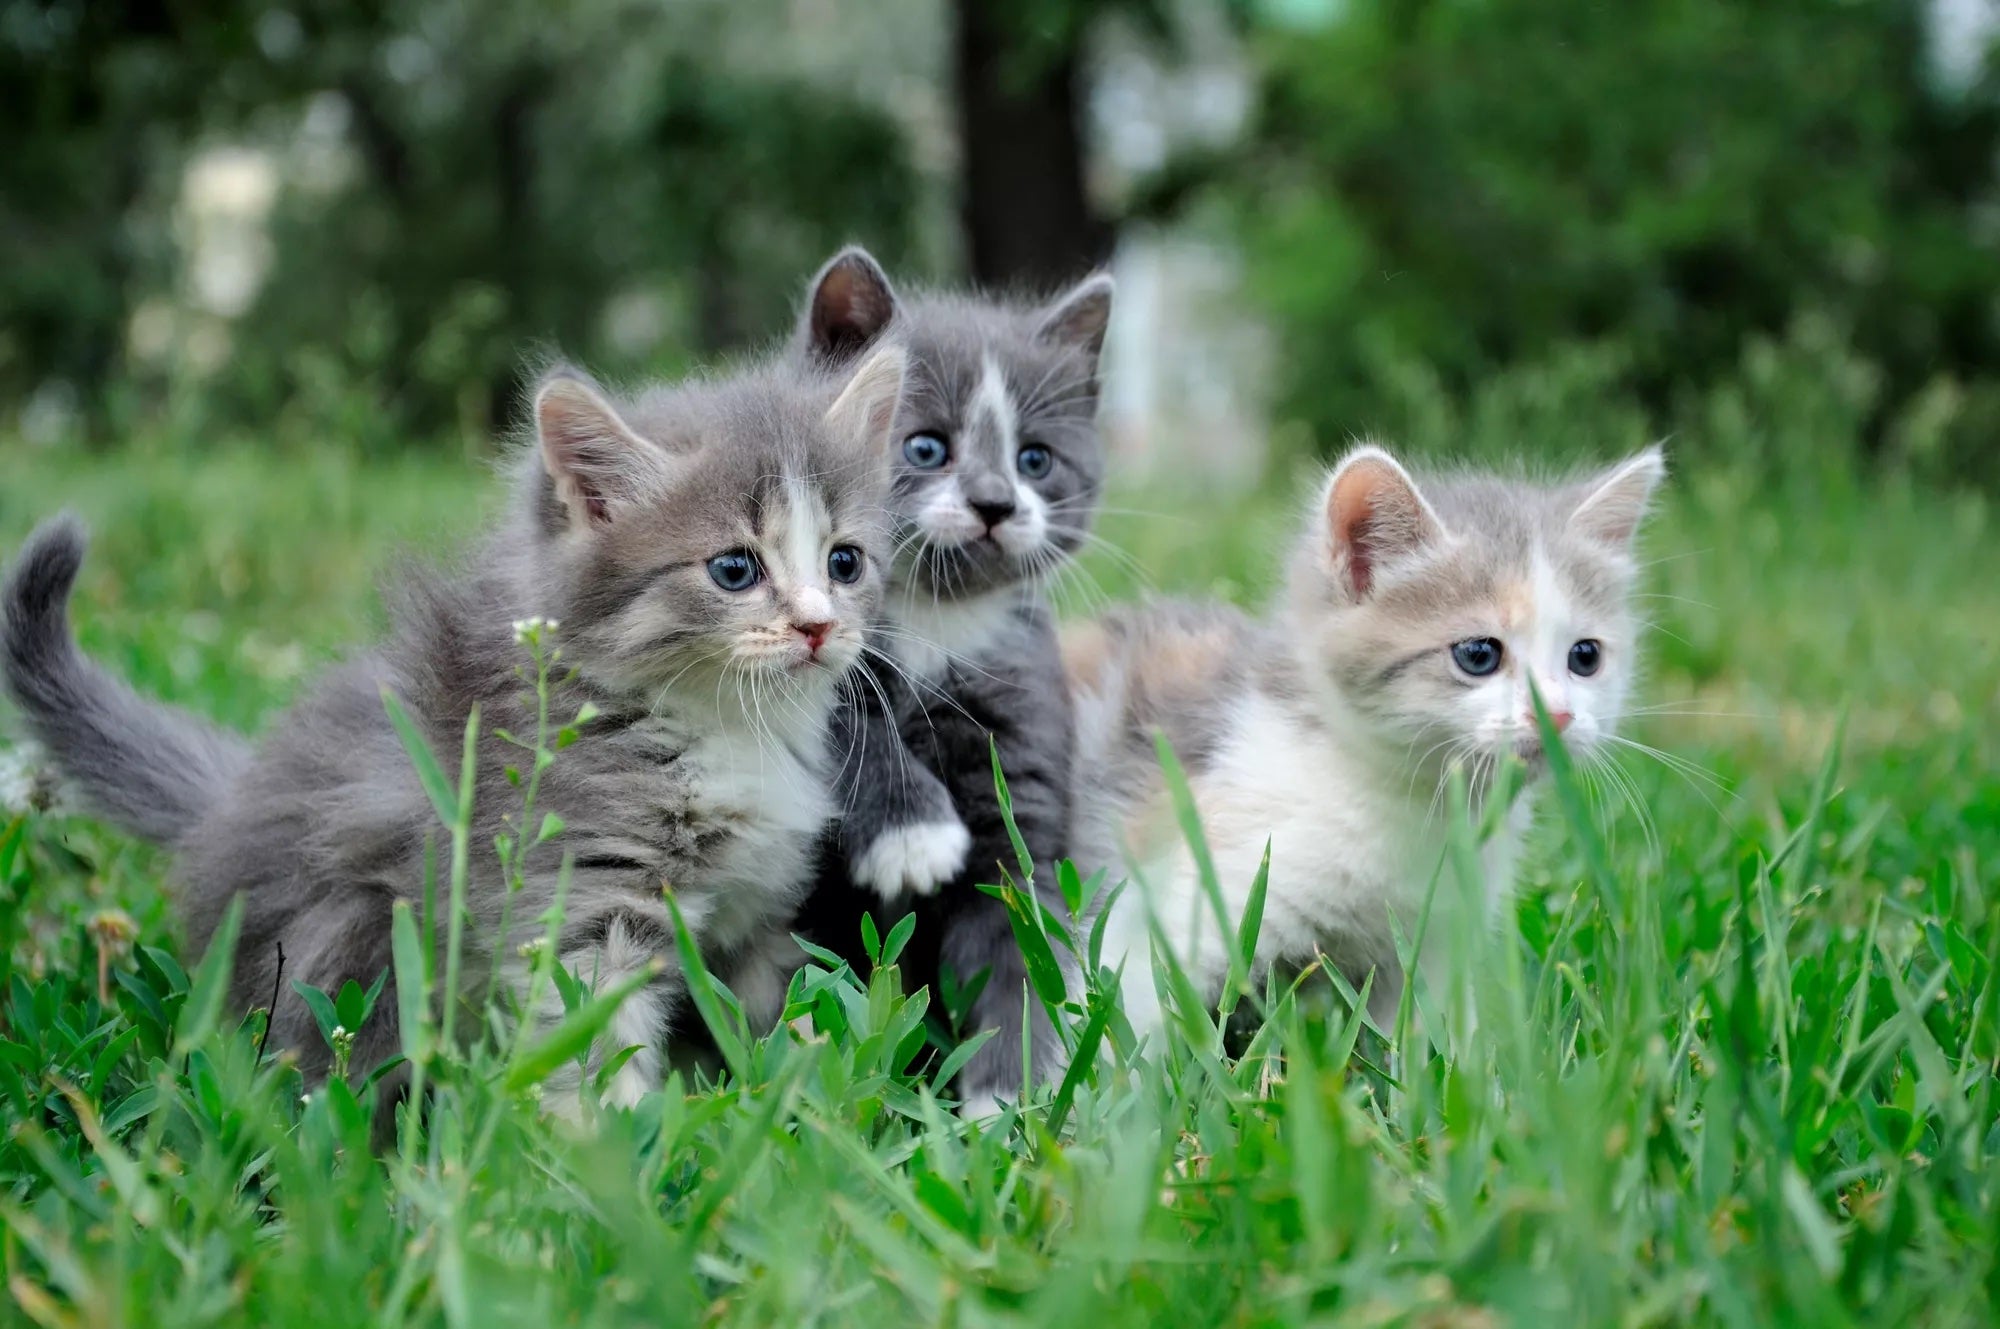 guide to raising a kitten, kitten care